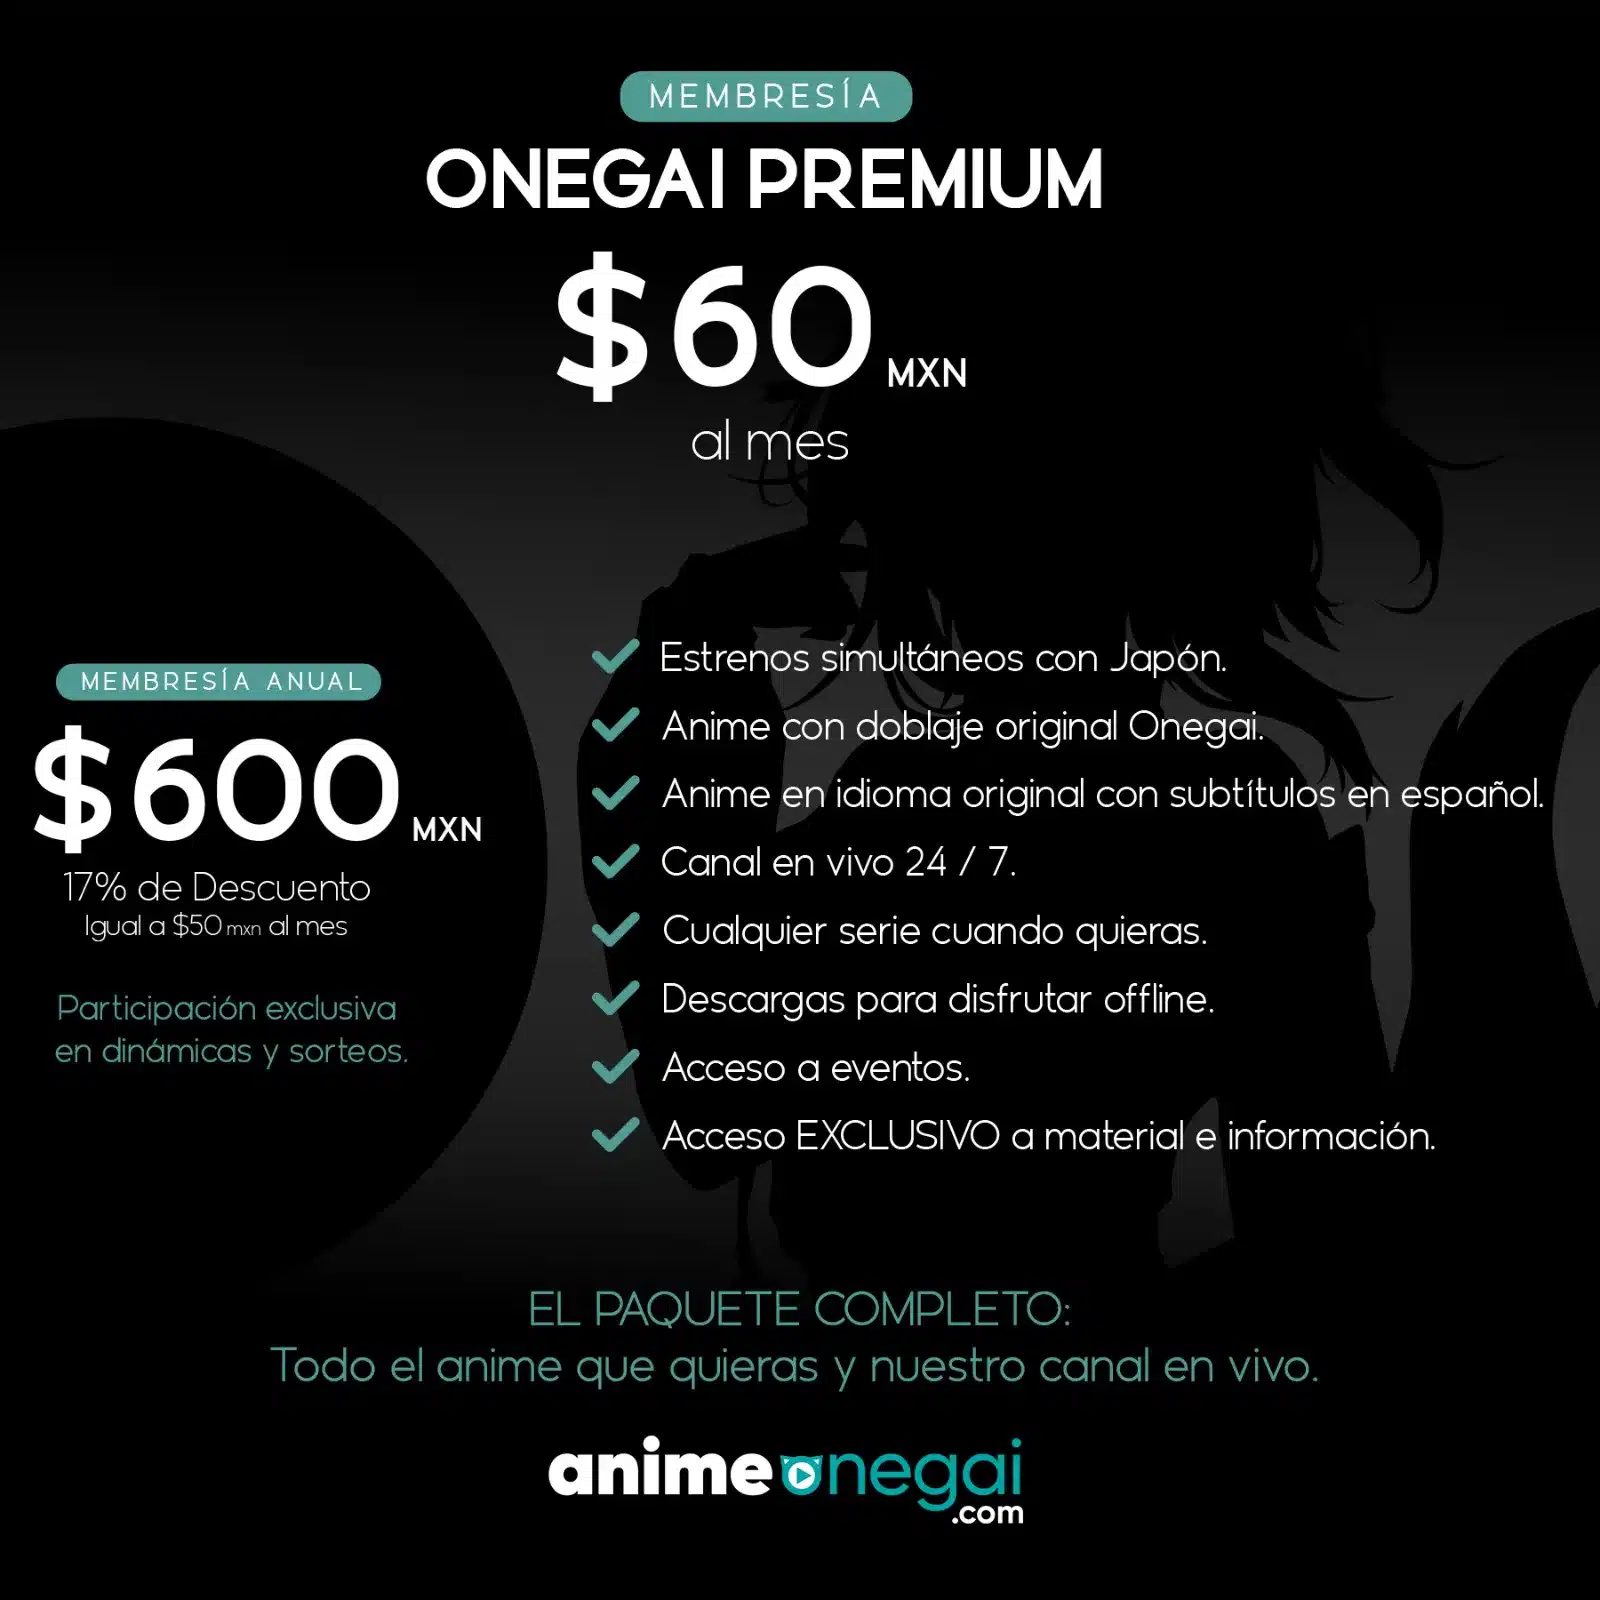 Onegai Premium